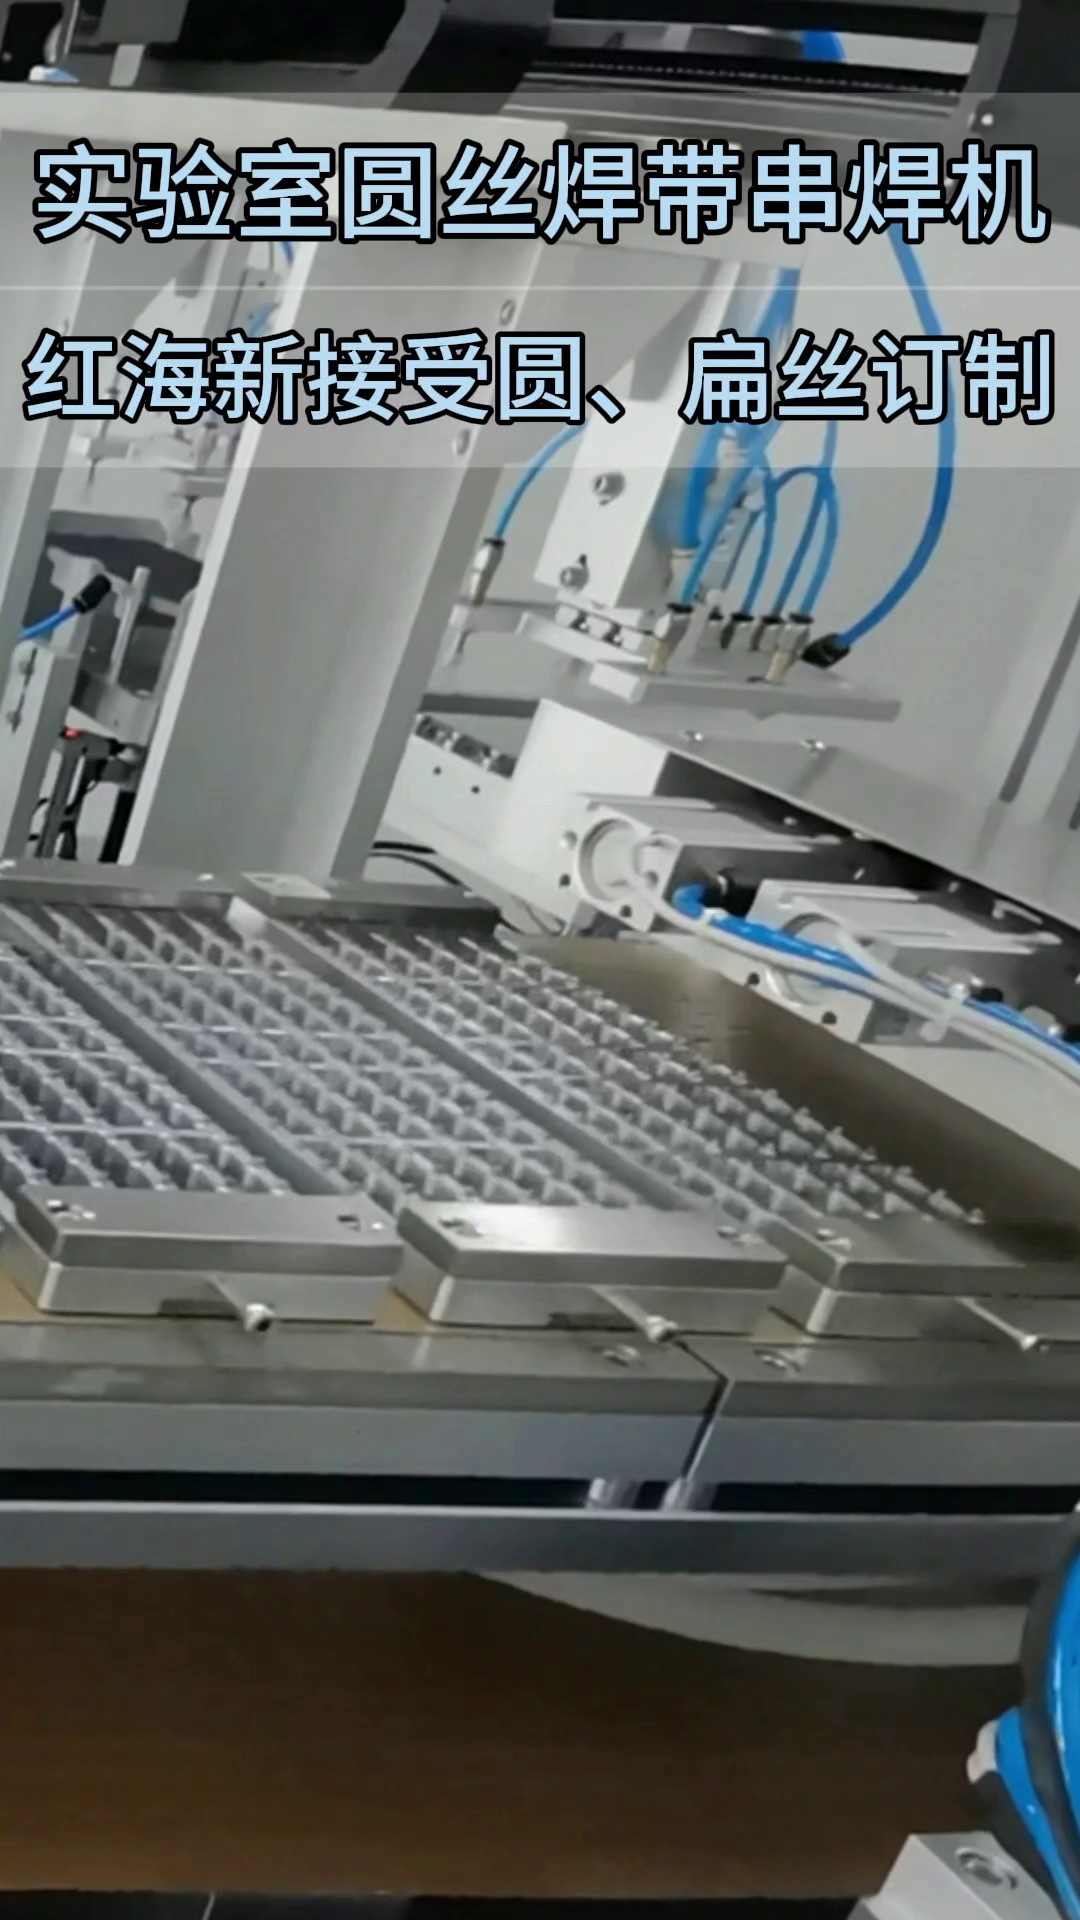 四川实验室用串焊机图片,实验室用串焊机